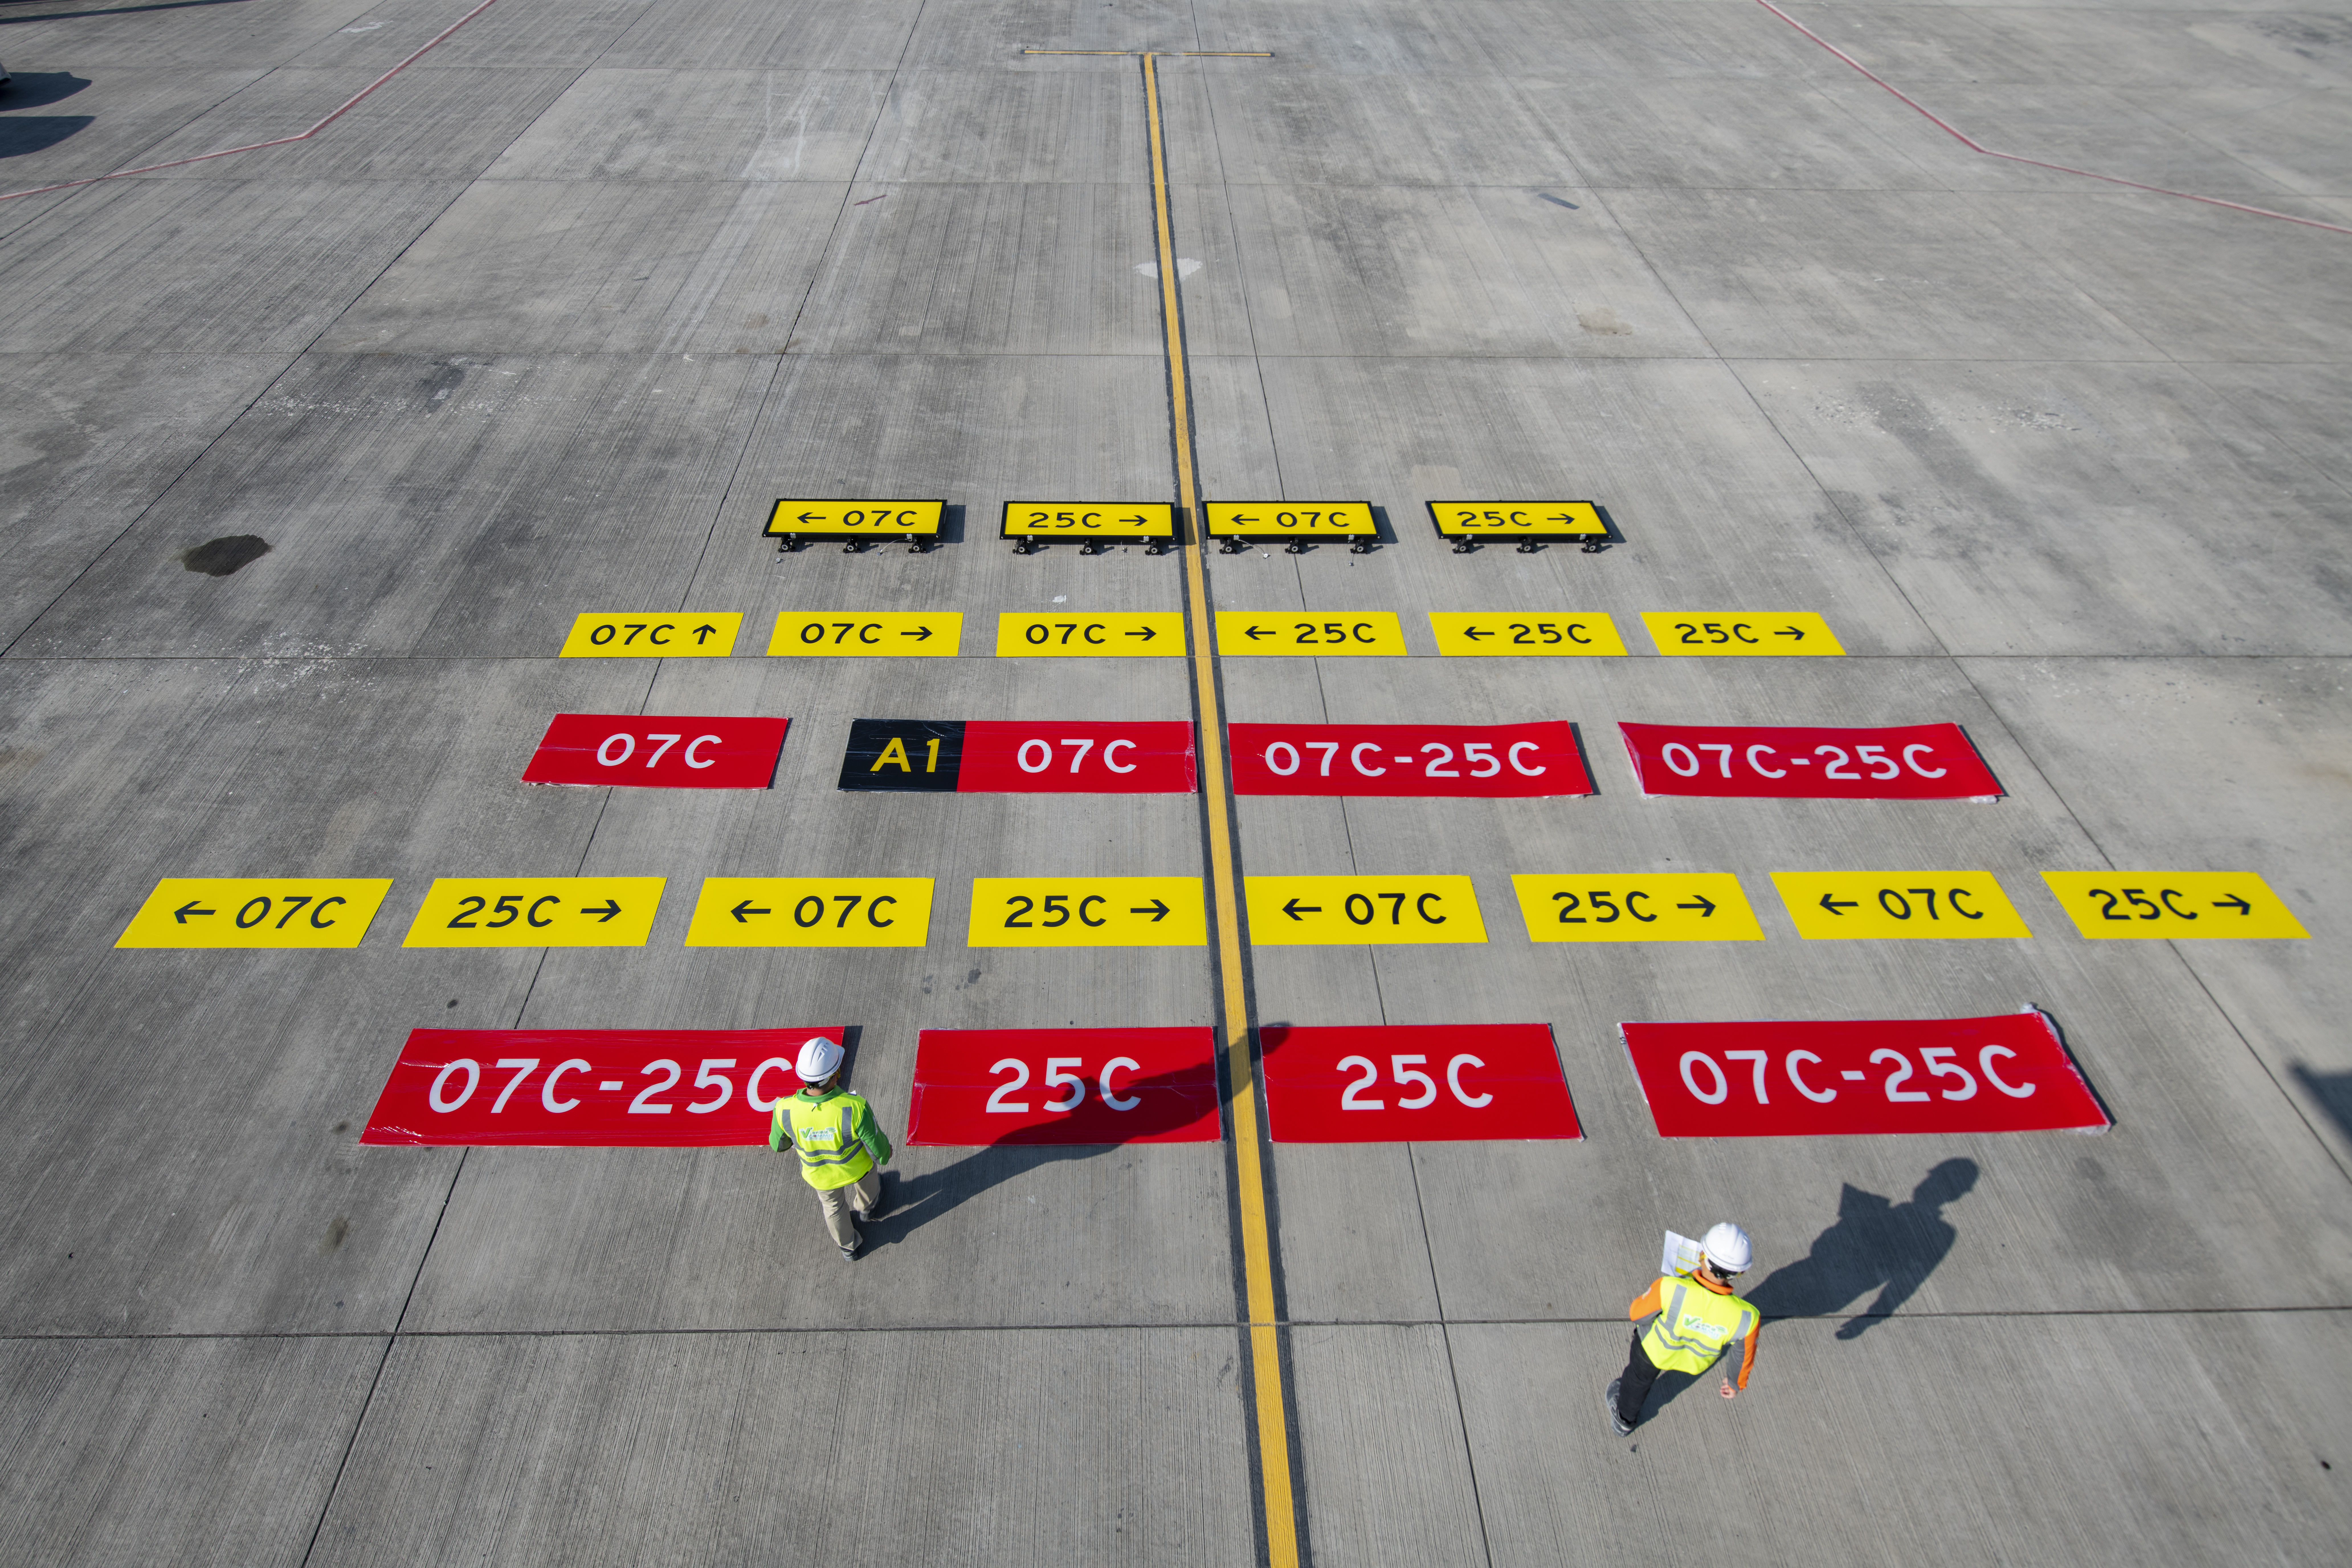 香港國際機場重新編配跑道